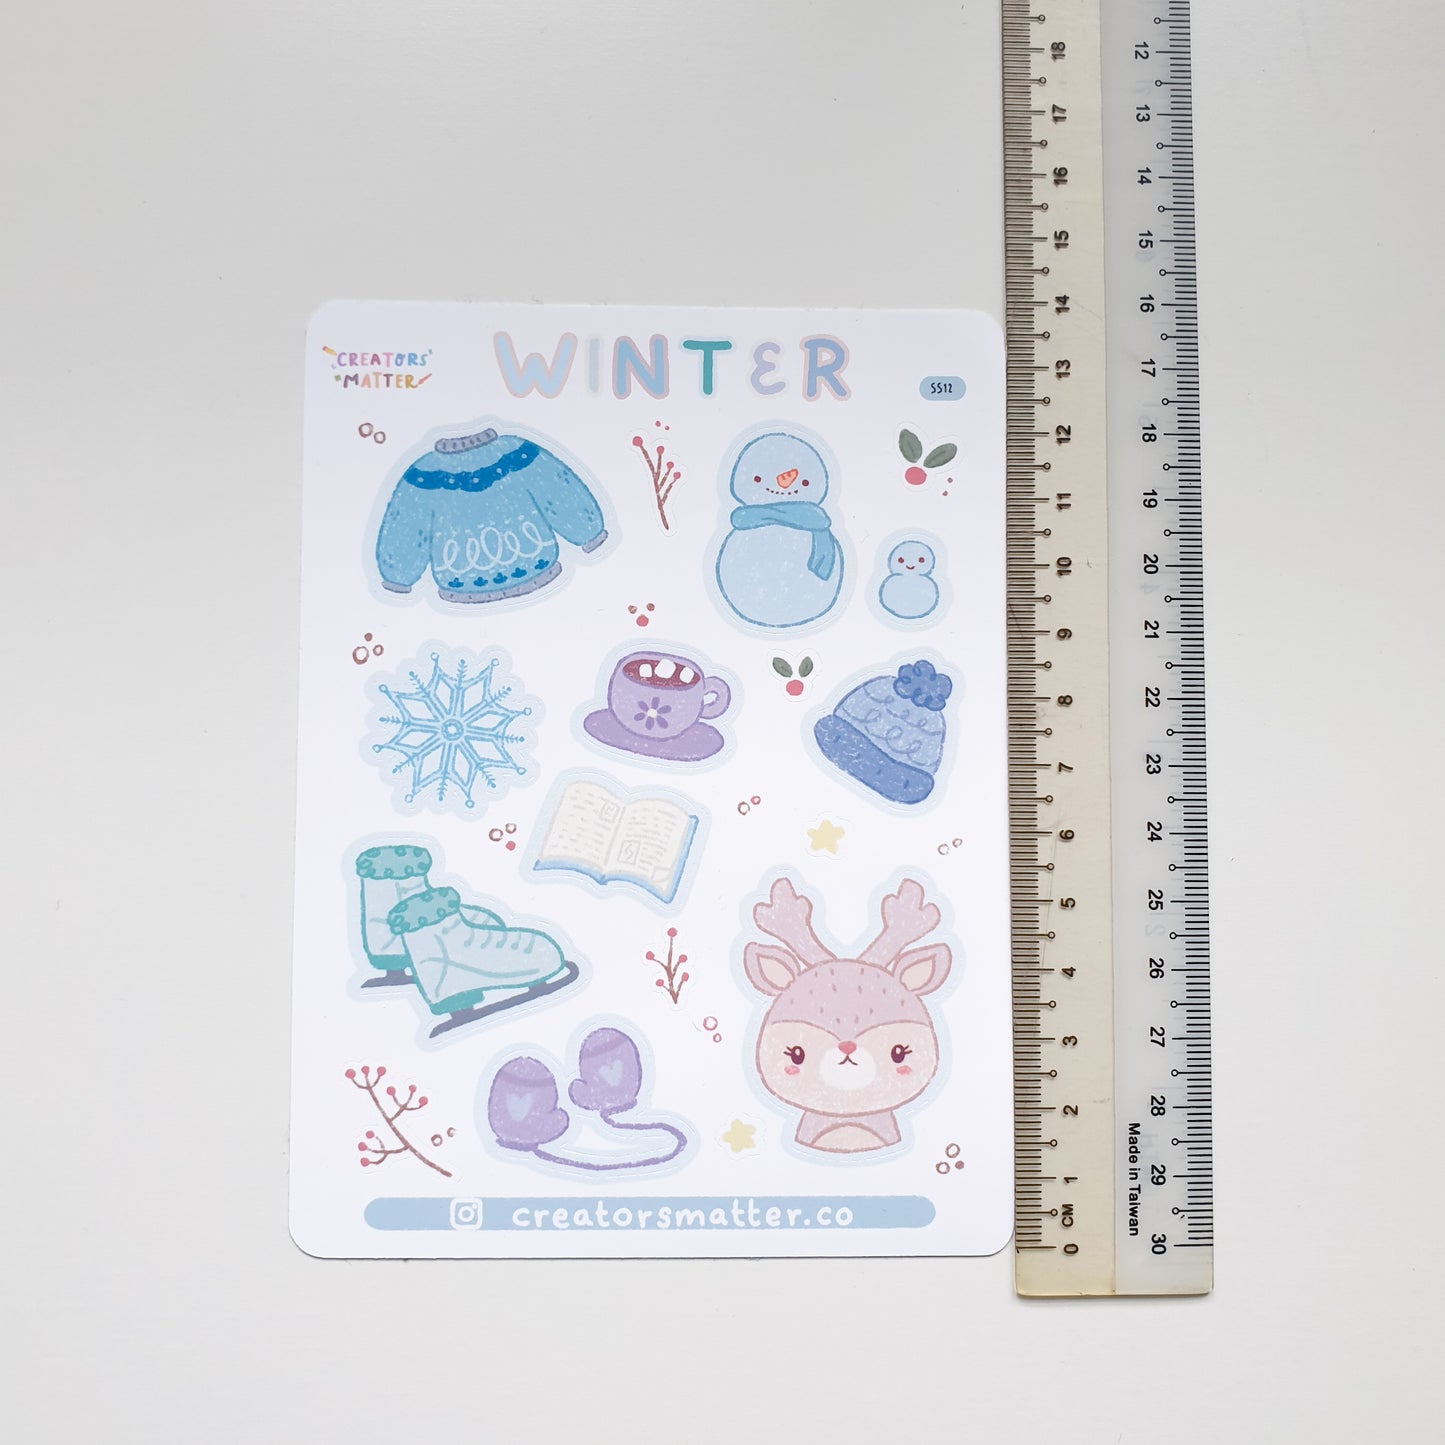 Creators Matter | Winter Sticker Sheet